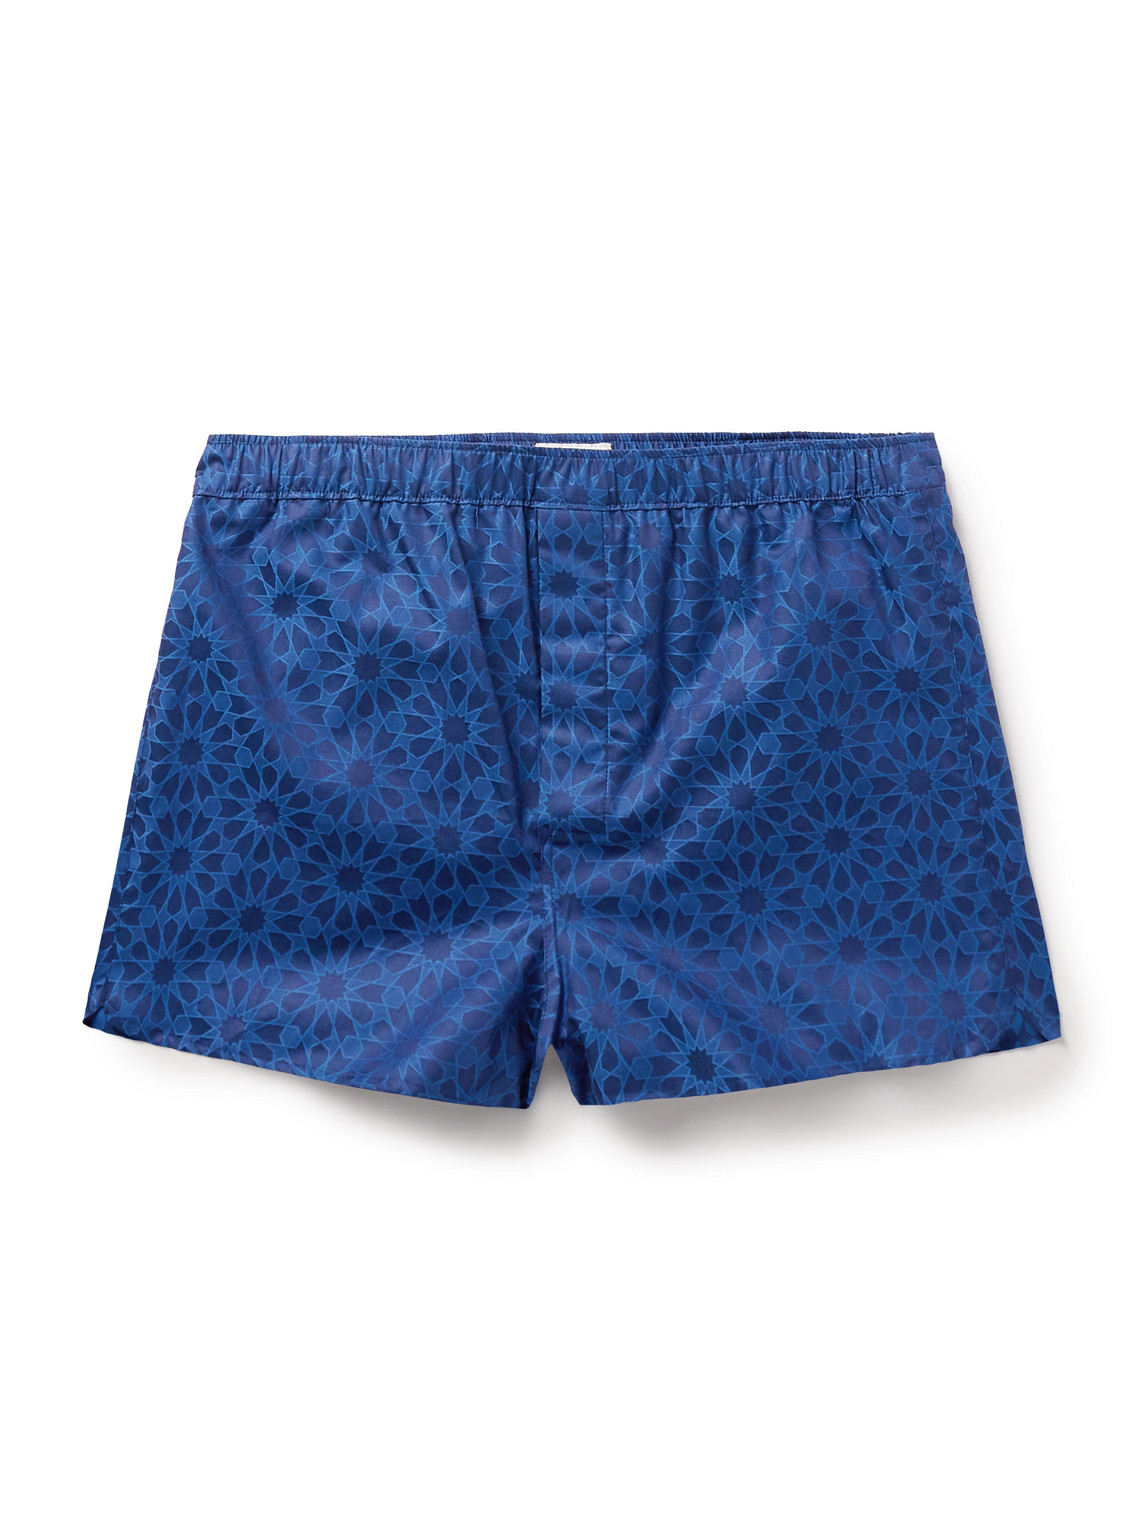 Paris 26 Cotton-Jacquard Boxer Shorts